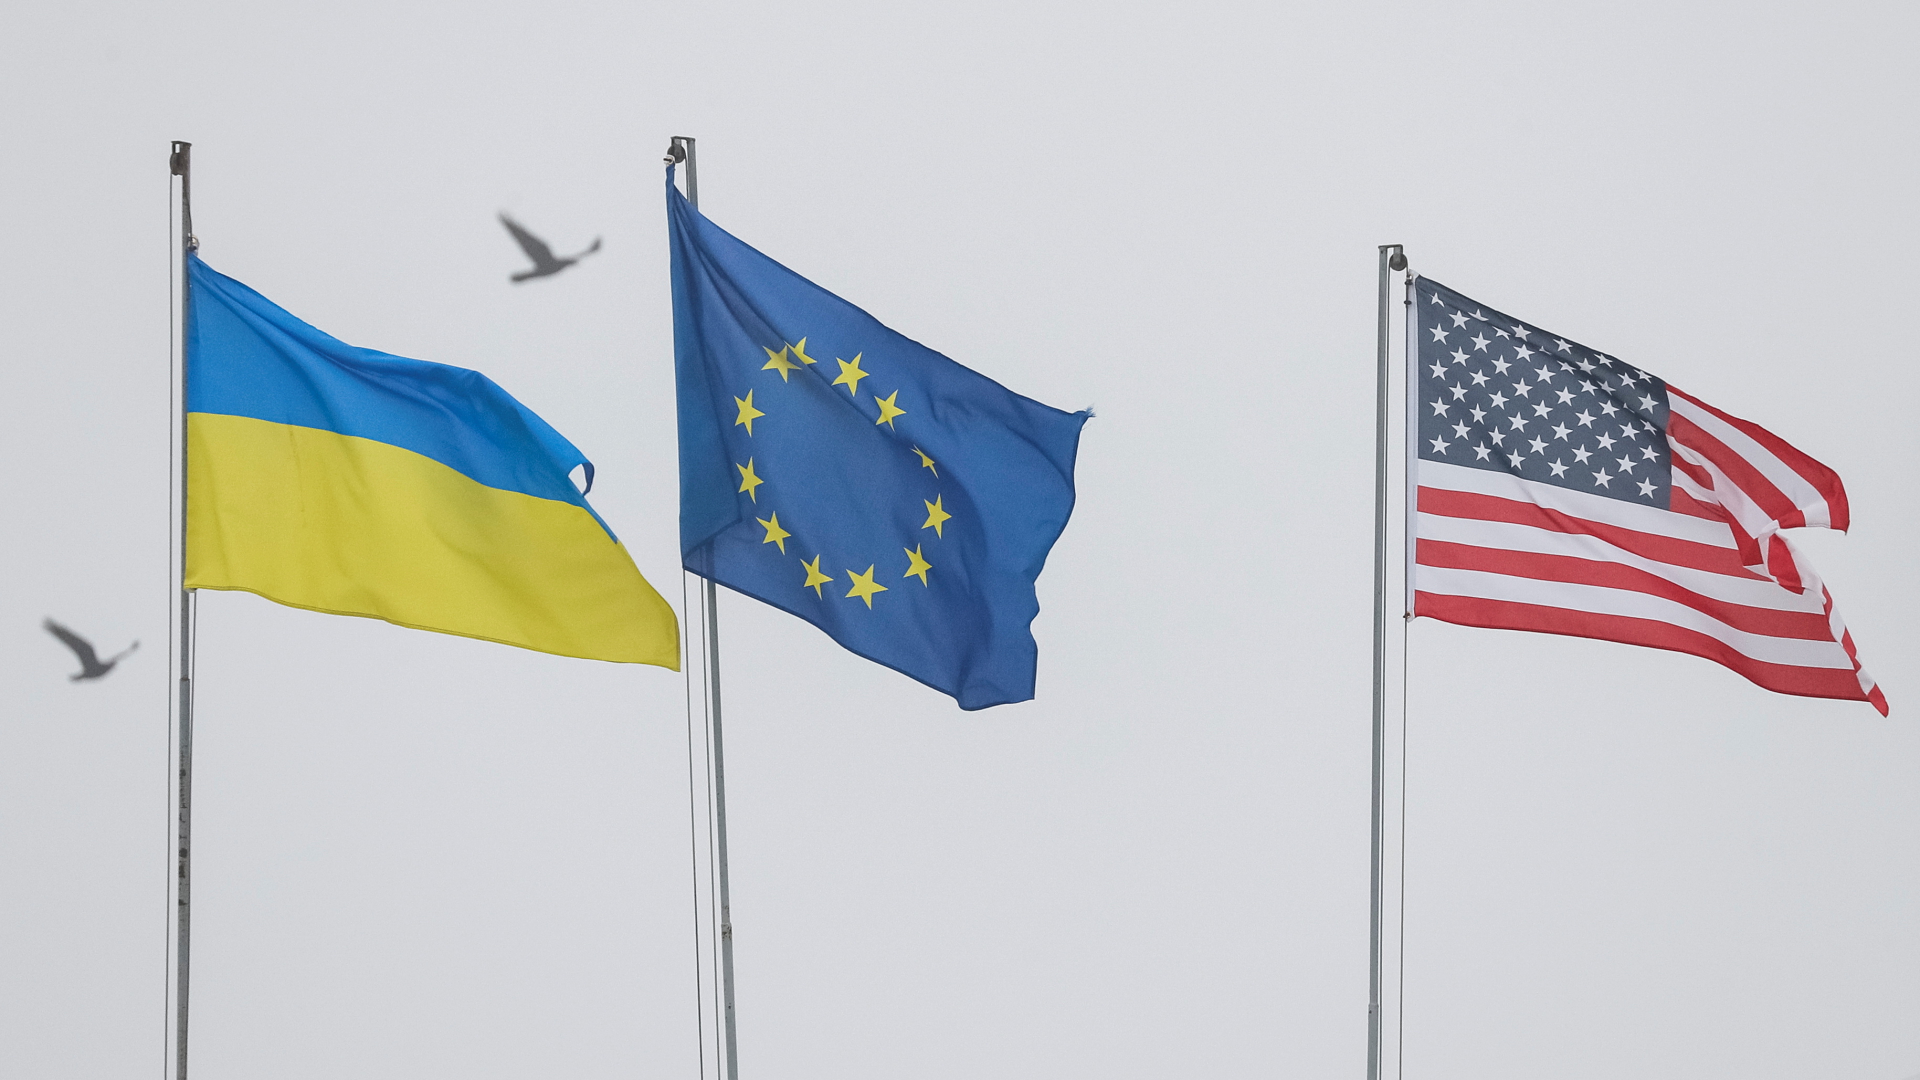 Flaggen der Ukraine, der Europäischen Union und der USA  | REUTERS